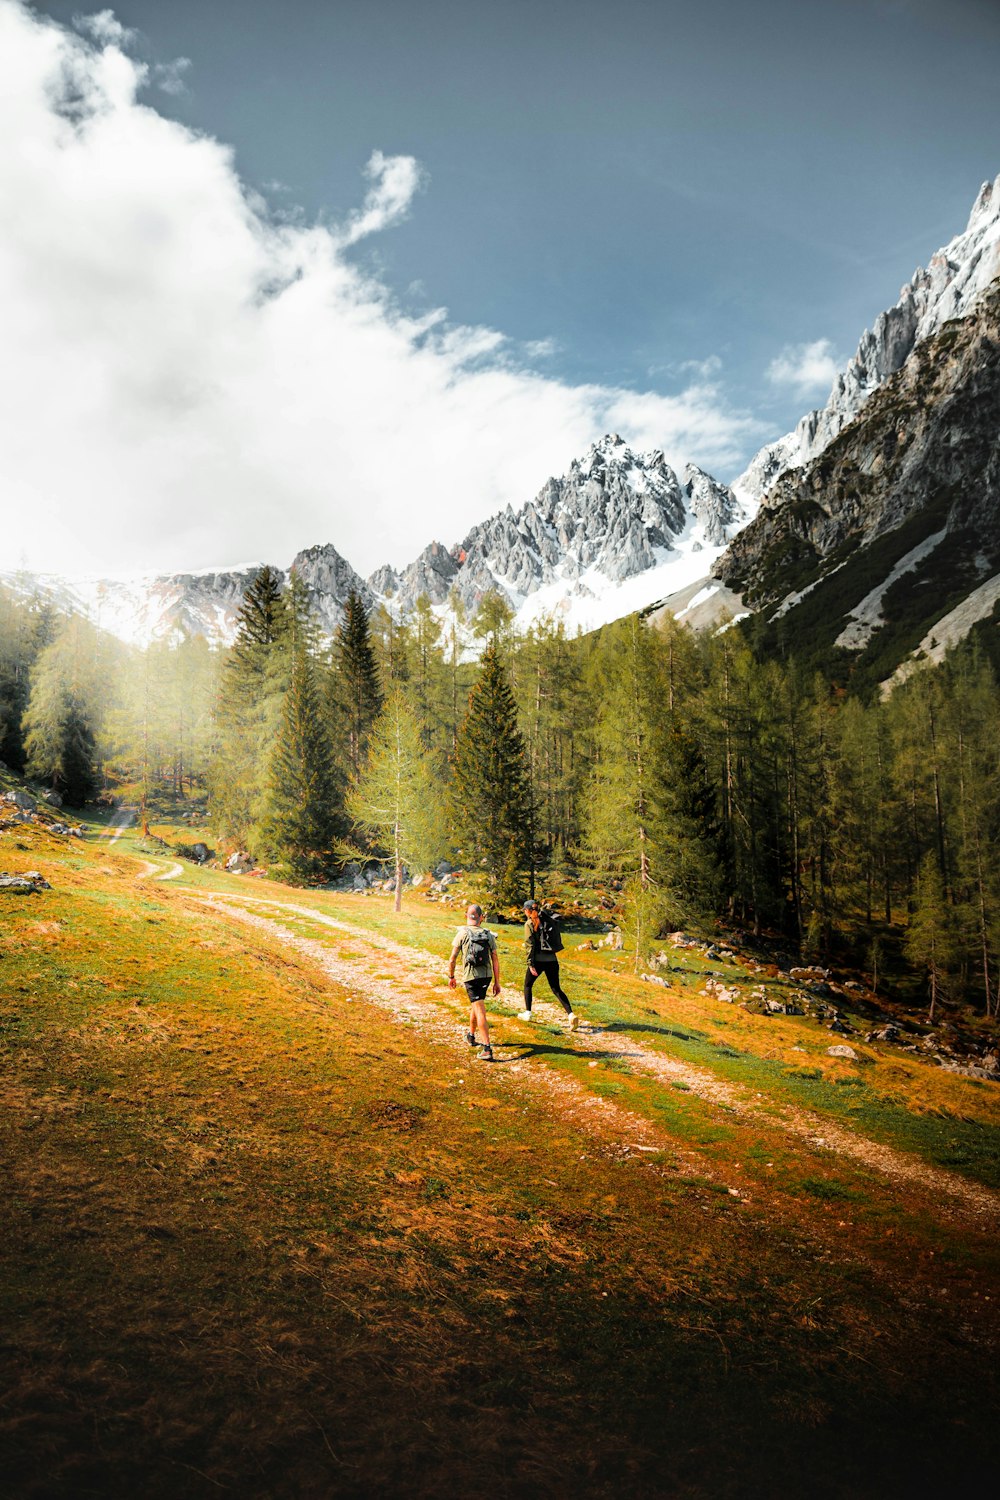 2 Personen fahren tagsüber auf einem Feldweg in der Nähe von grünen Bäumen und schneebedeckten Bergen